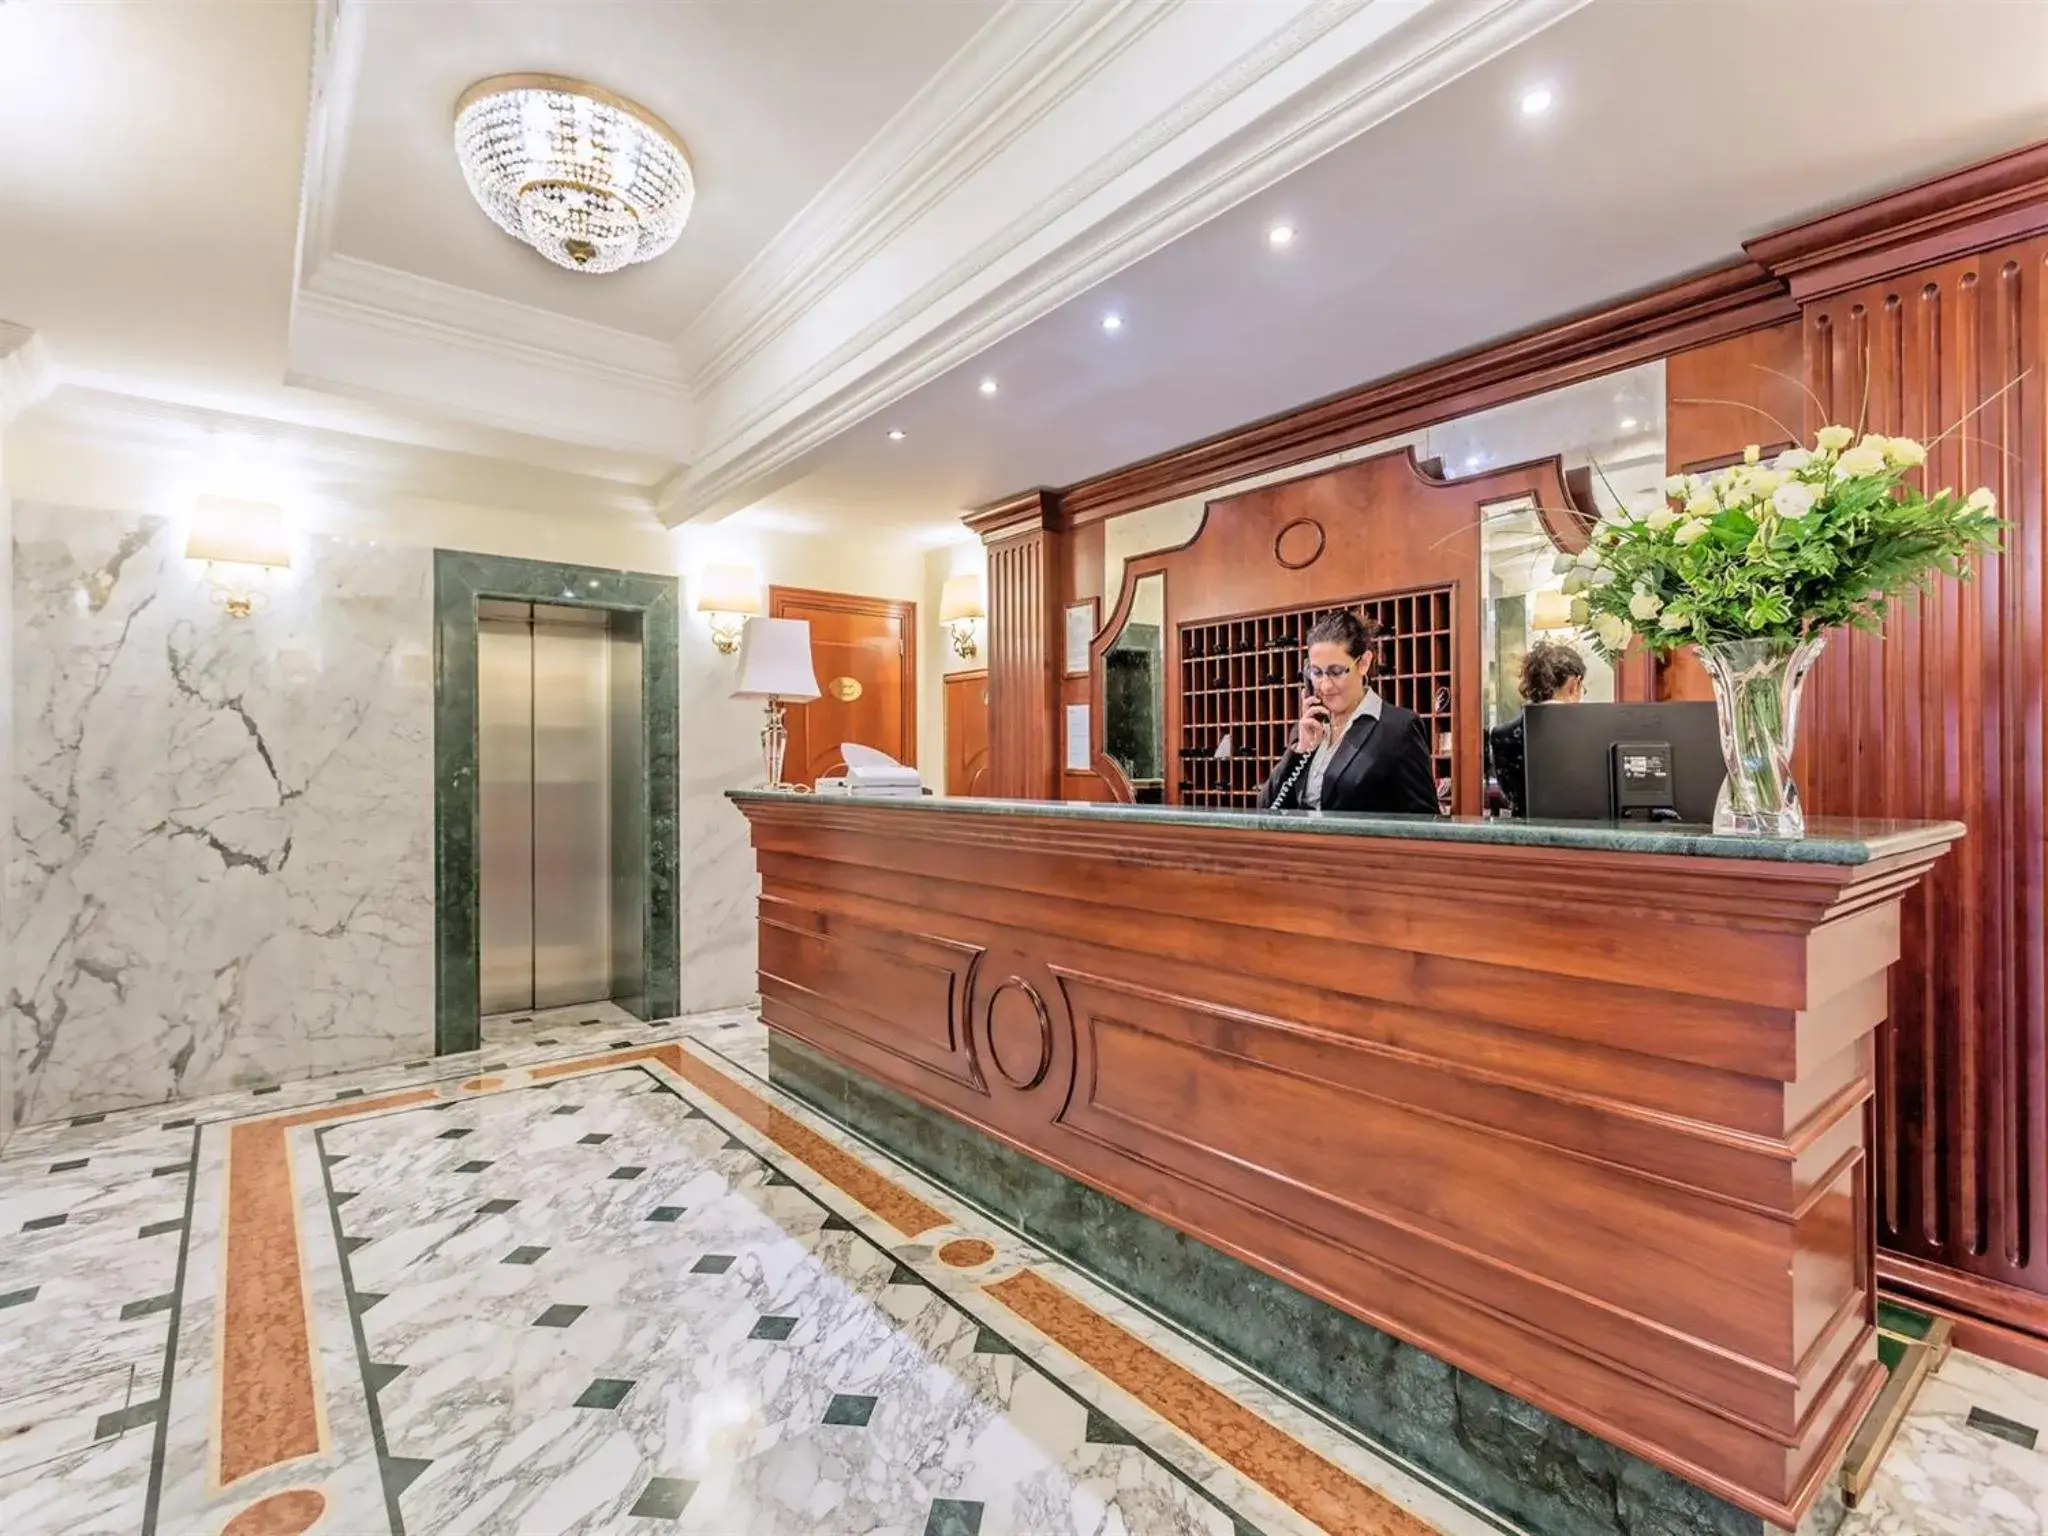 Lobby or reception, Lobby/Reception in Raeli Hotel Regio